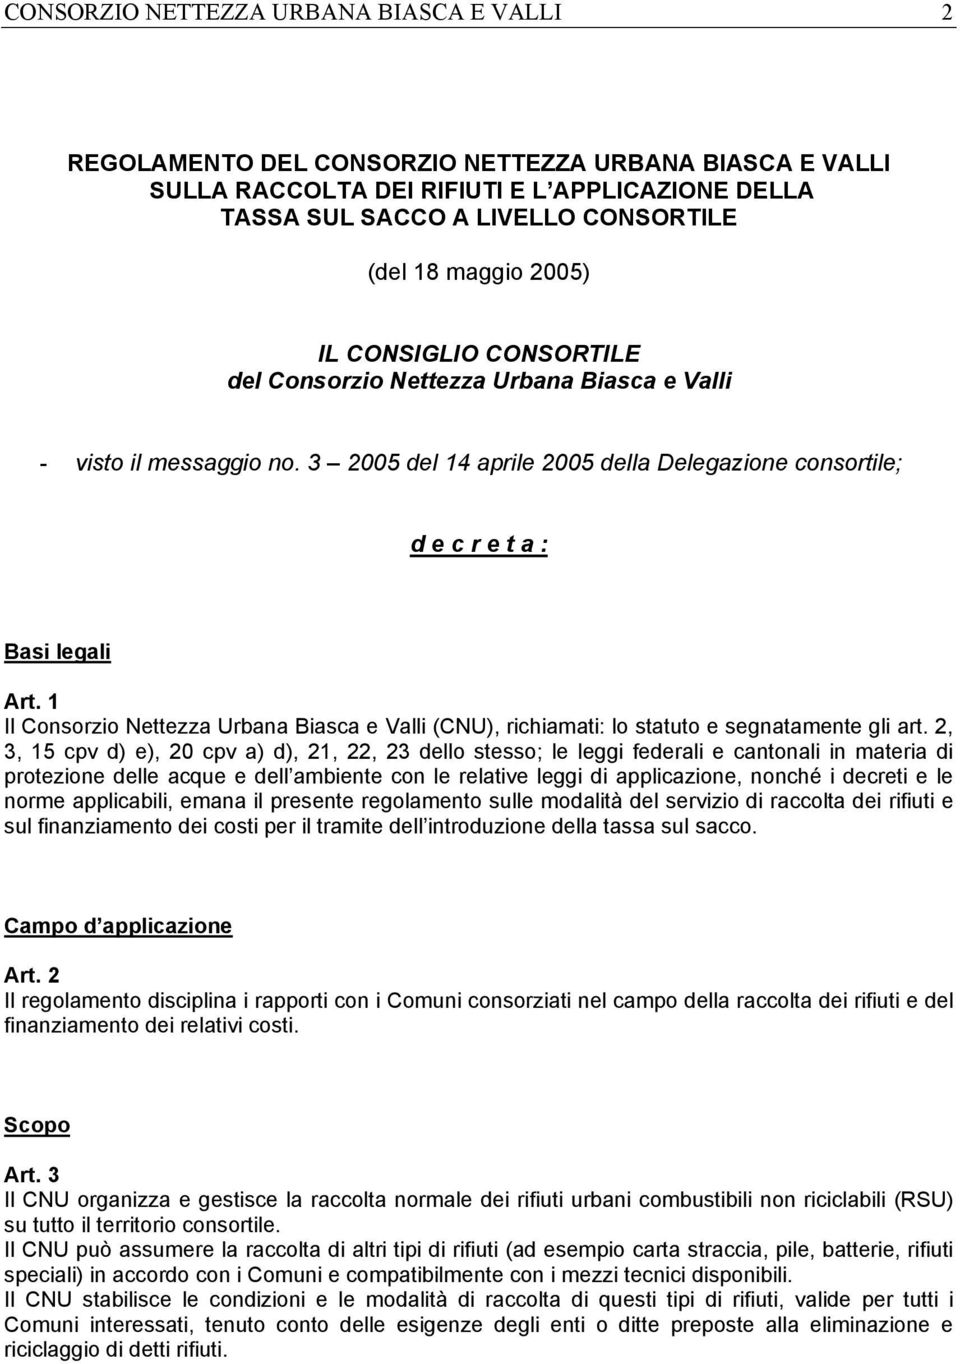 1 Il Consorzio Nettezza Urbana Biasca e Valli (CNU), richiamati: lo statuto e segnatamente gli art.